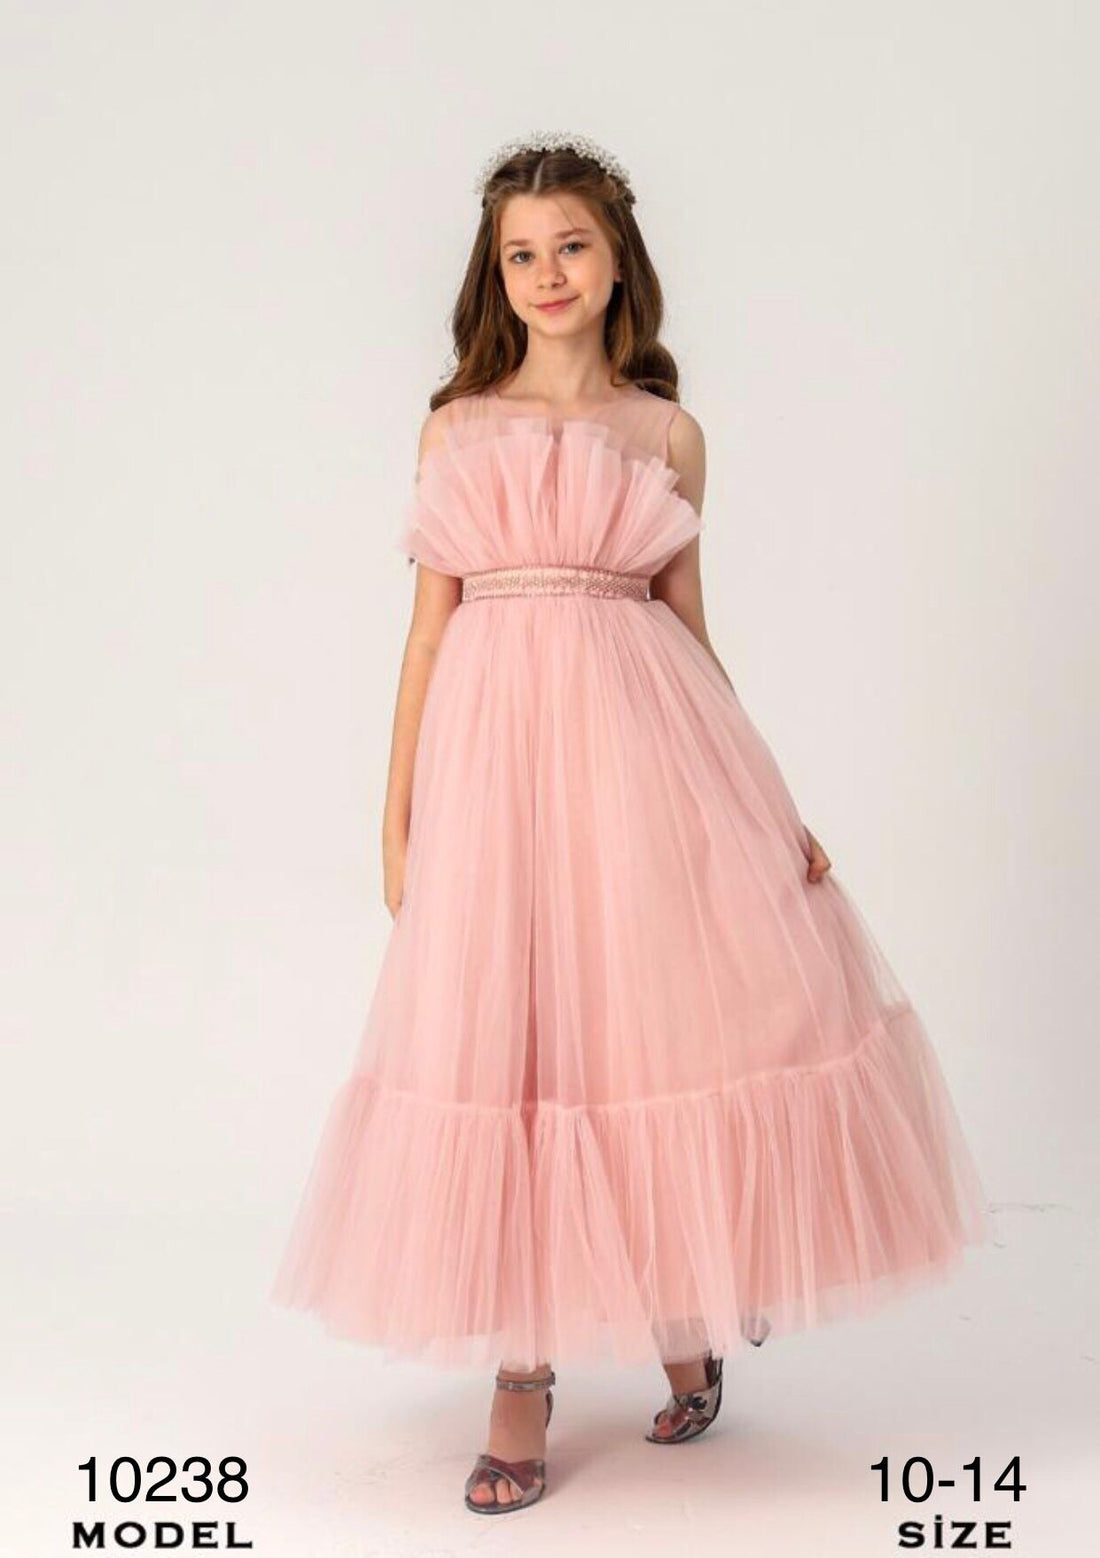 Teen Lovely Pink Dress 10238